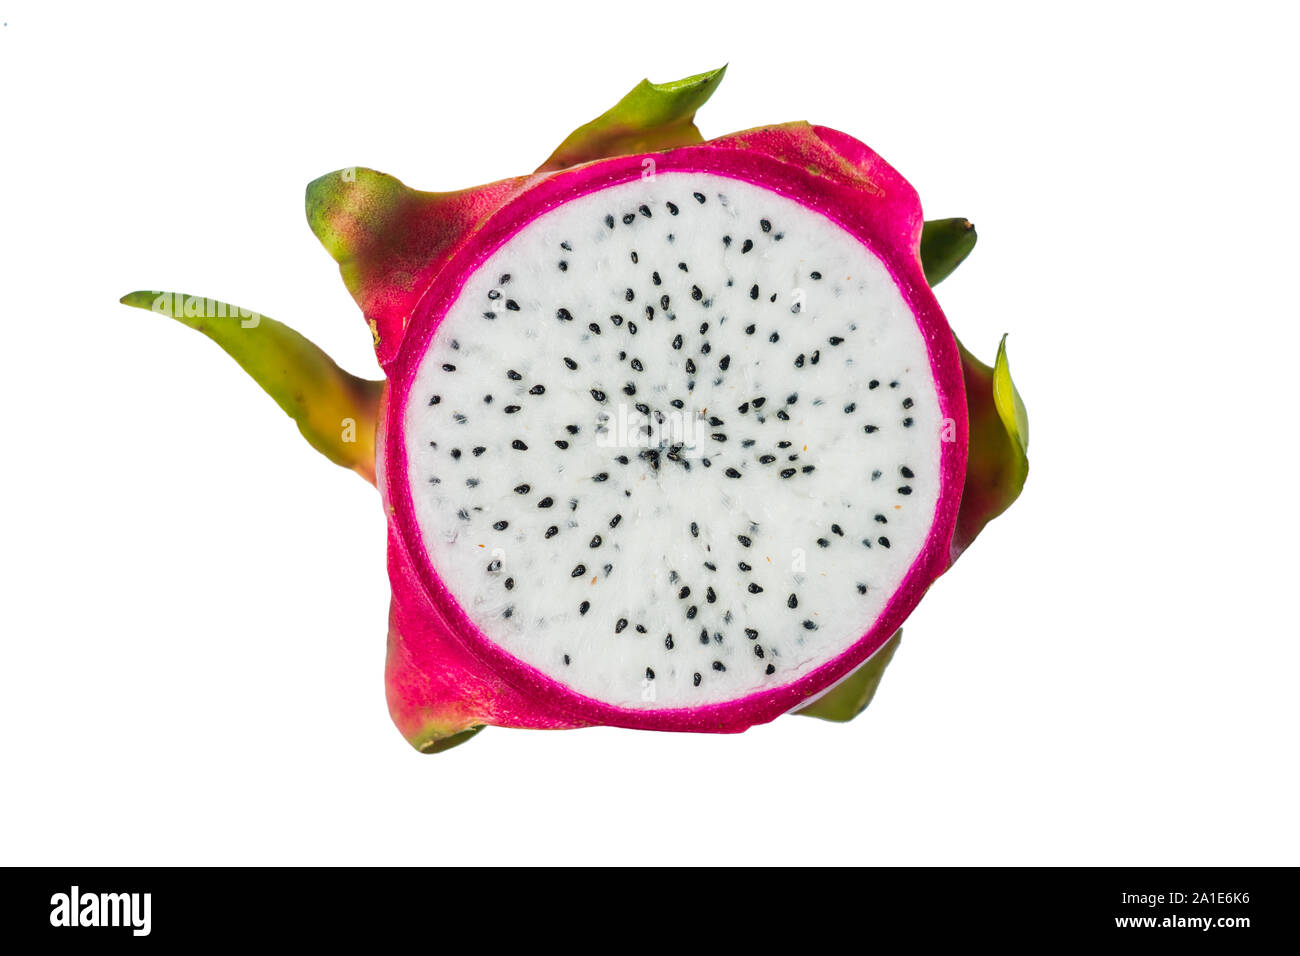 A slice of pitahaya fruit isolated on white background. Stock Photo